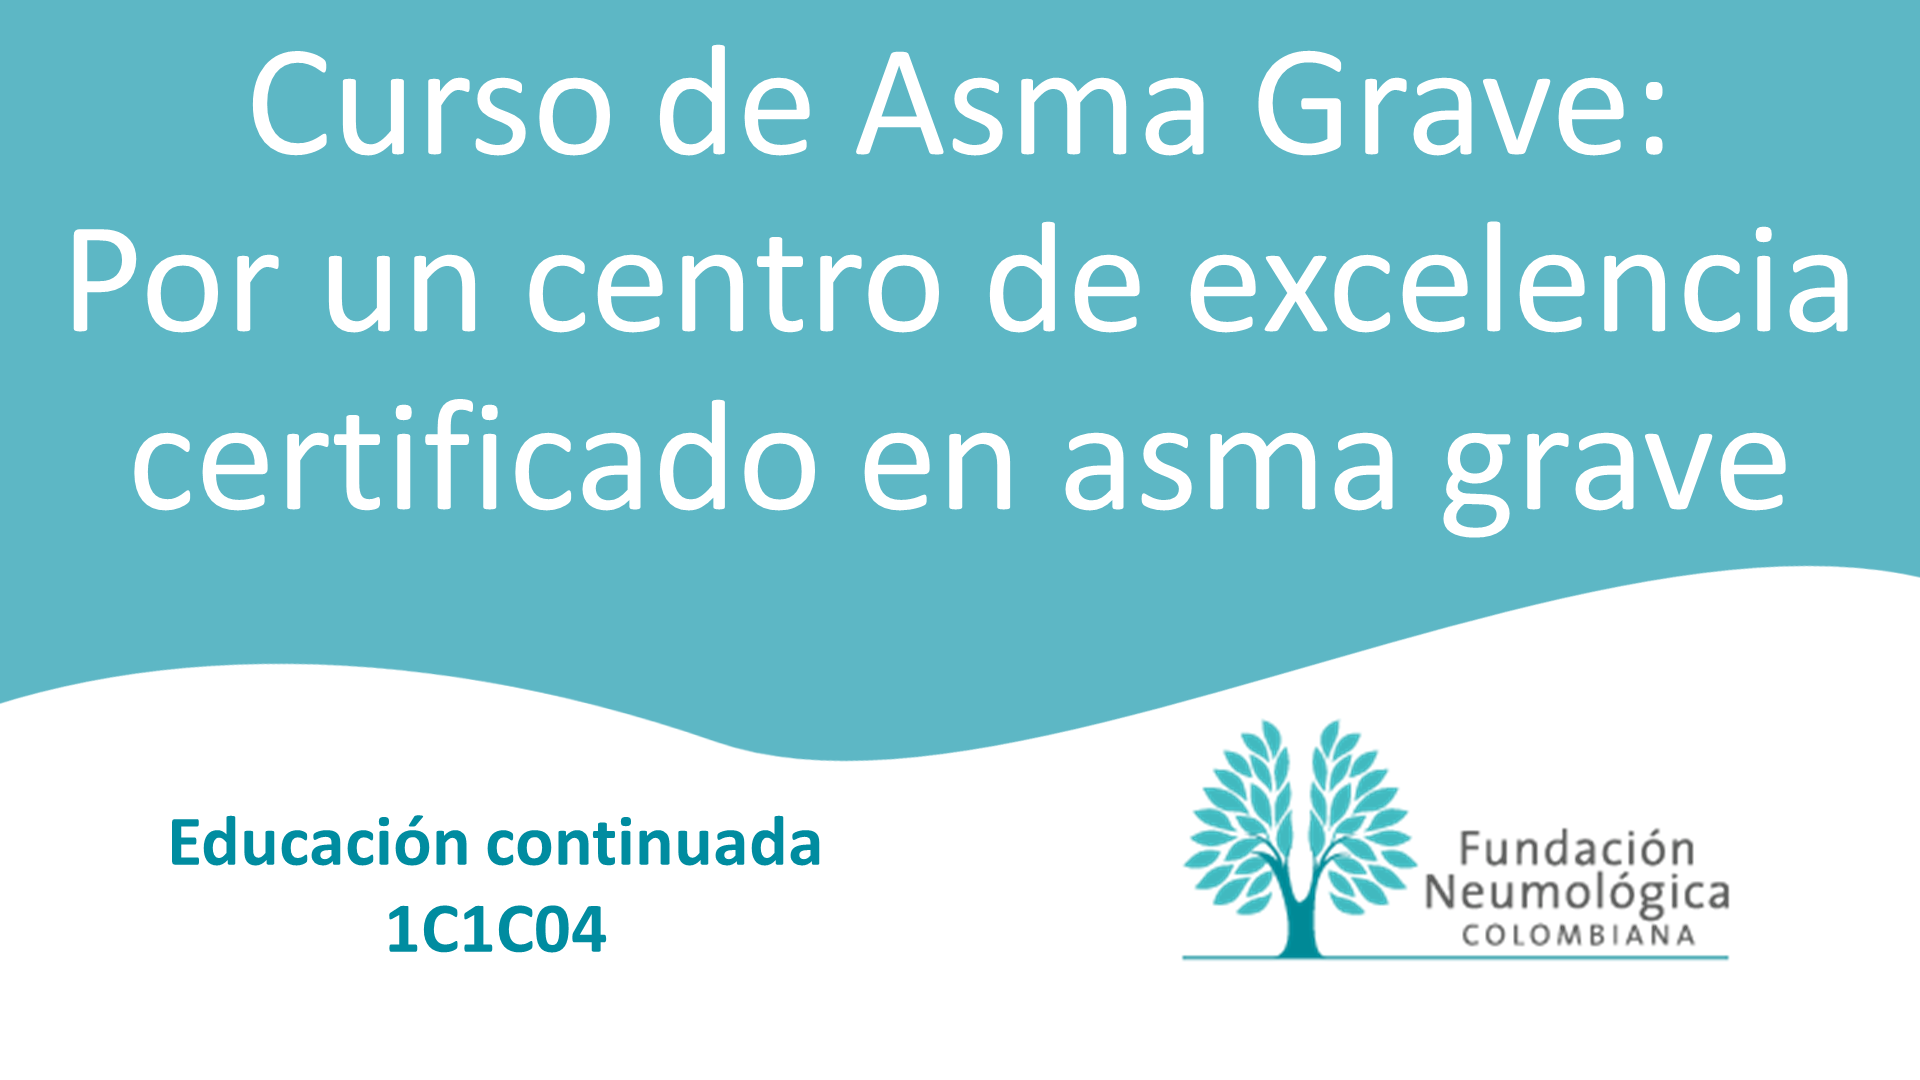 Curso de Asma Grave: Por un centro de excelencia certificado en asma grave